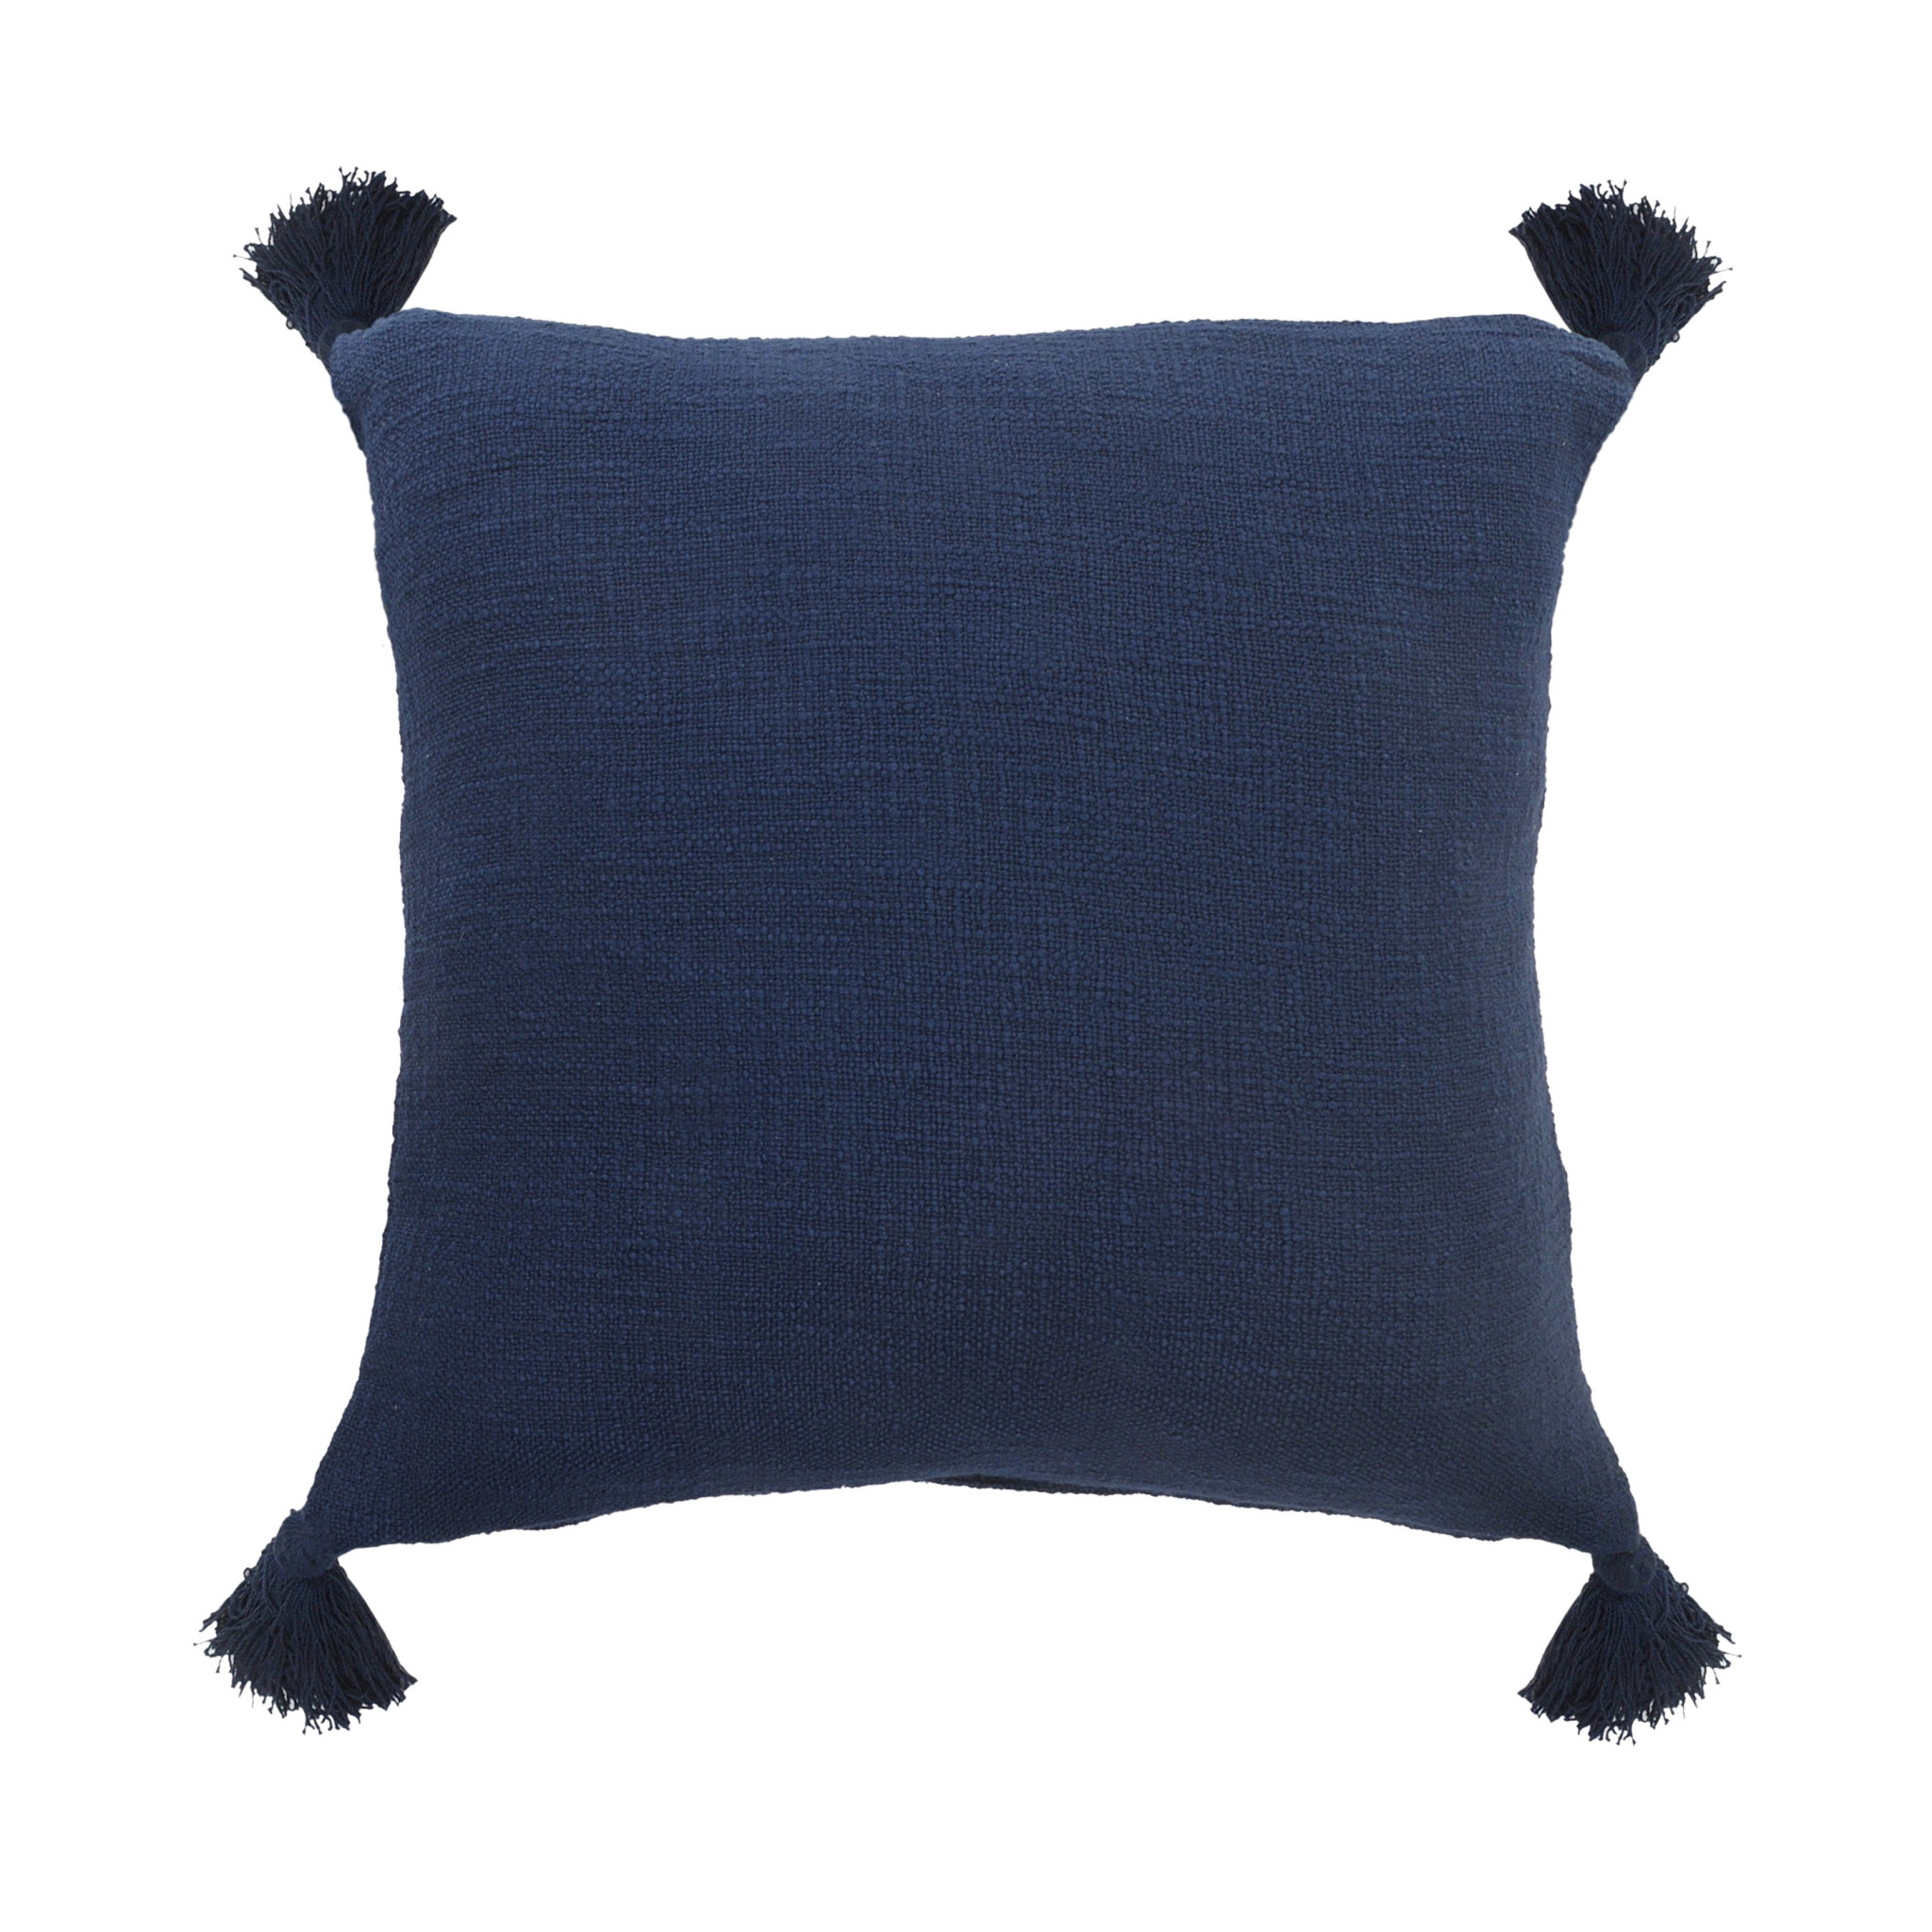 20" X 20" Navy Blue 100% Cotton Zippered Pillow-516877-1